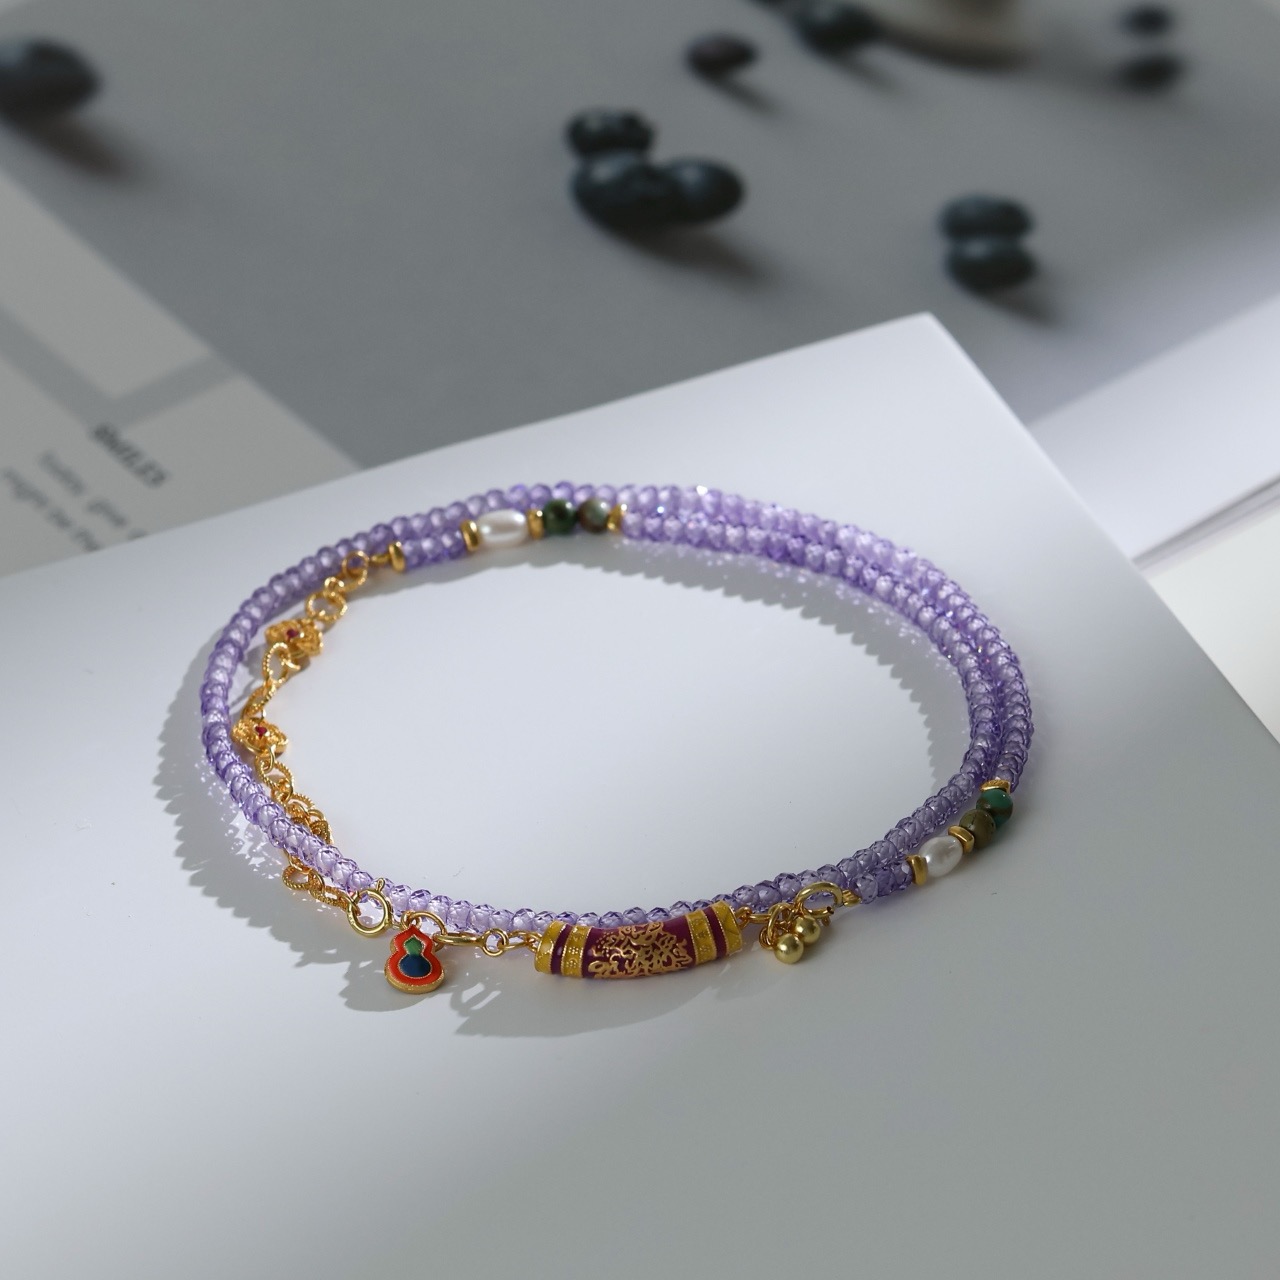 流行宝石珠子编织项链高品质装饰串珠项链